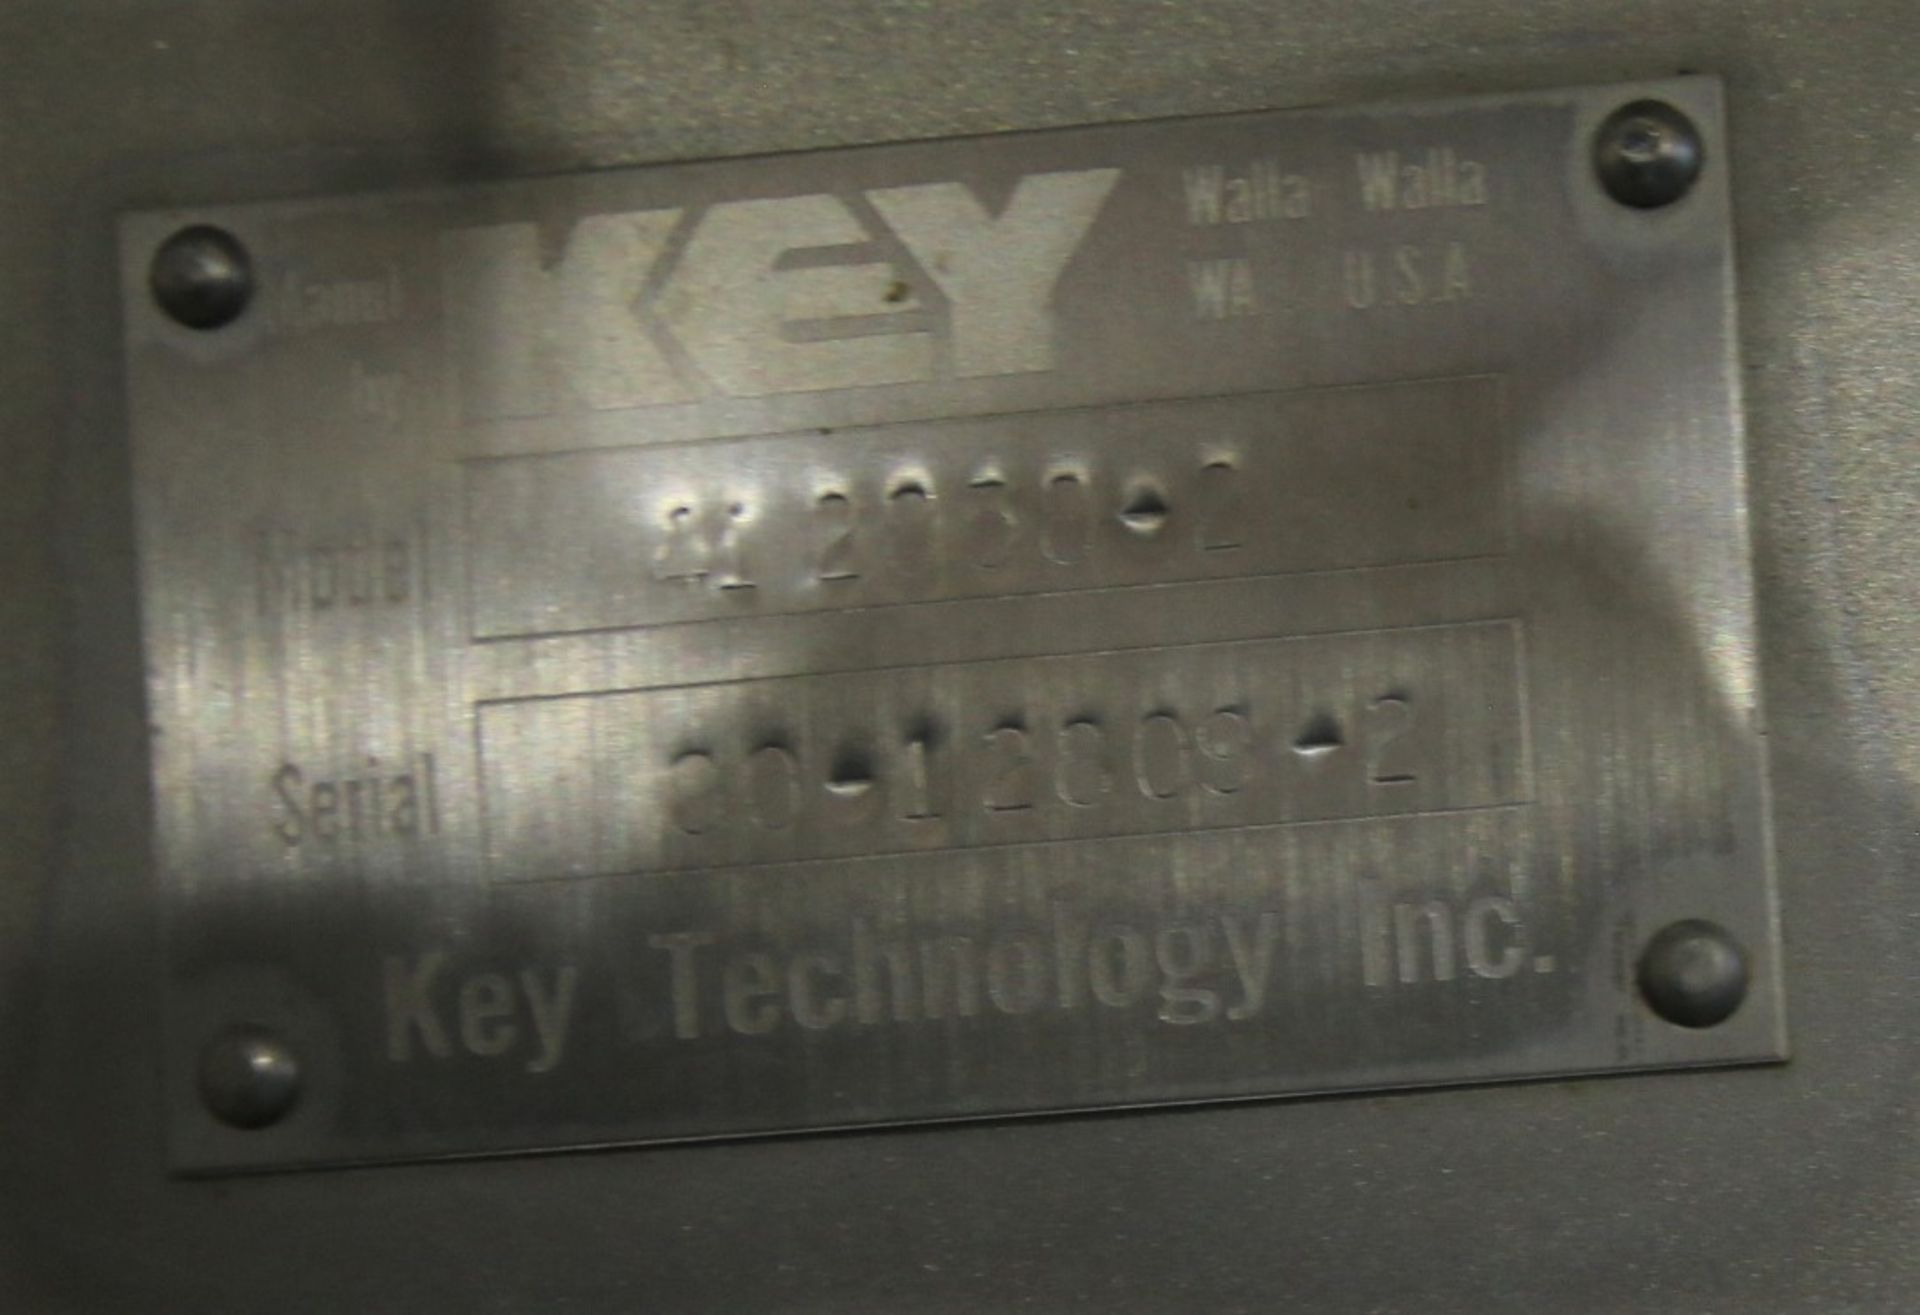 Key ISO - FLO 7 ft L x 30" W x 5" D - 2 - Level S/S Shaker Deck, Model 412858-2, SN 90-12809-2, 4" - Image 5 of 5